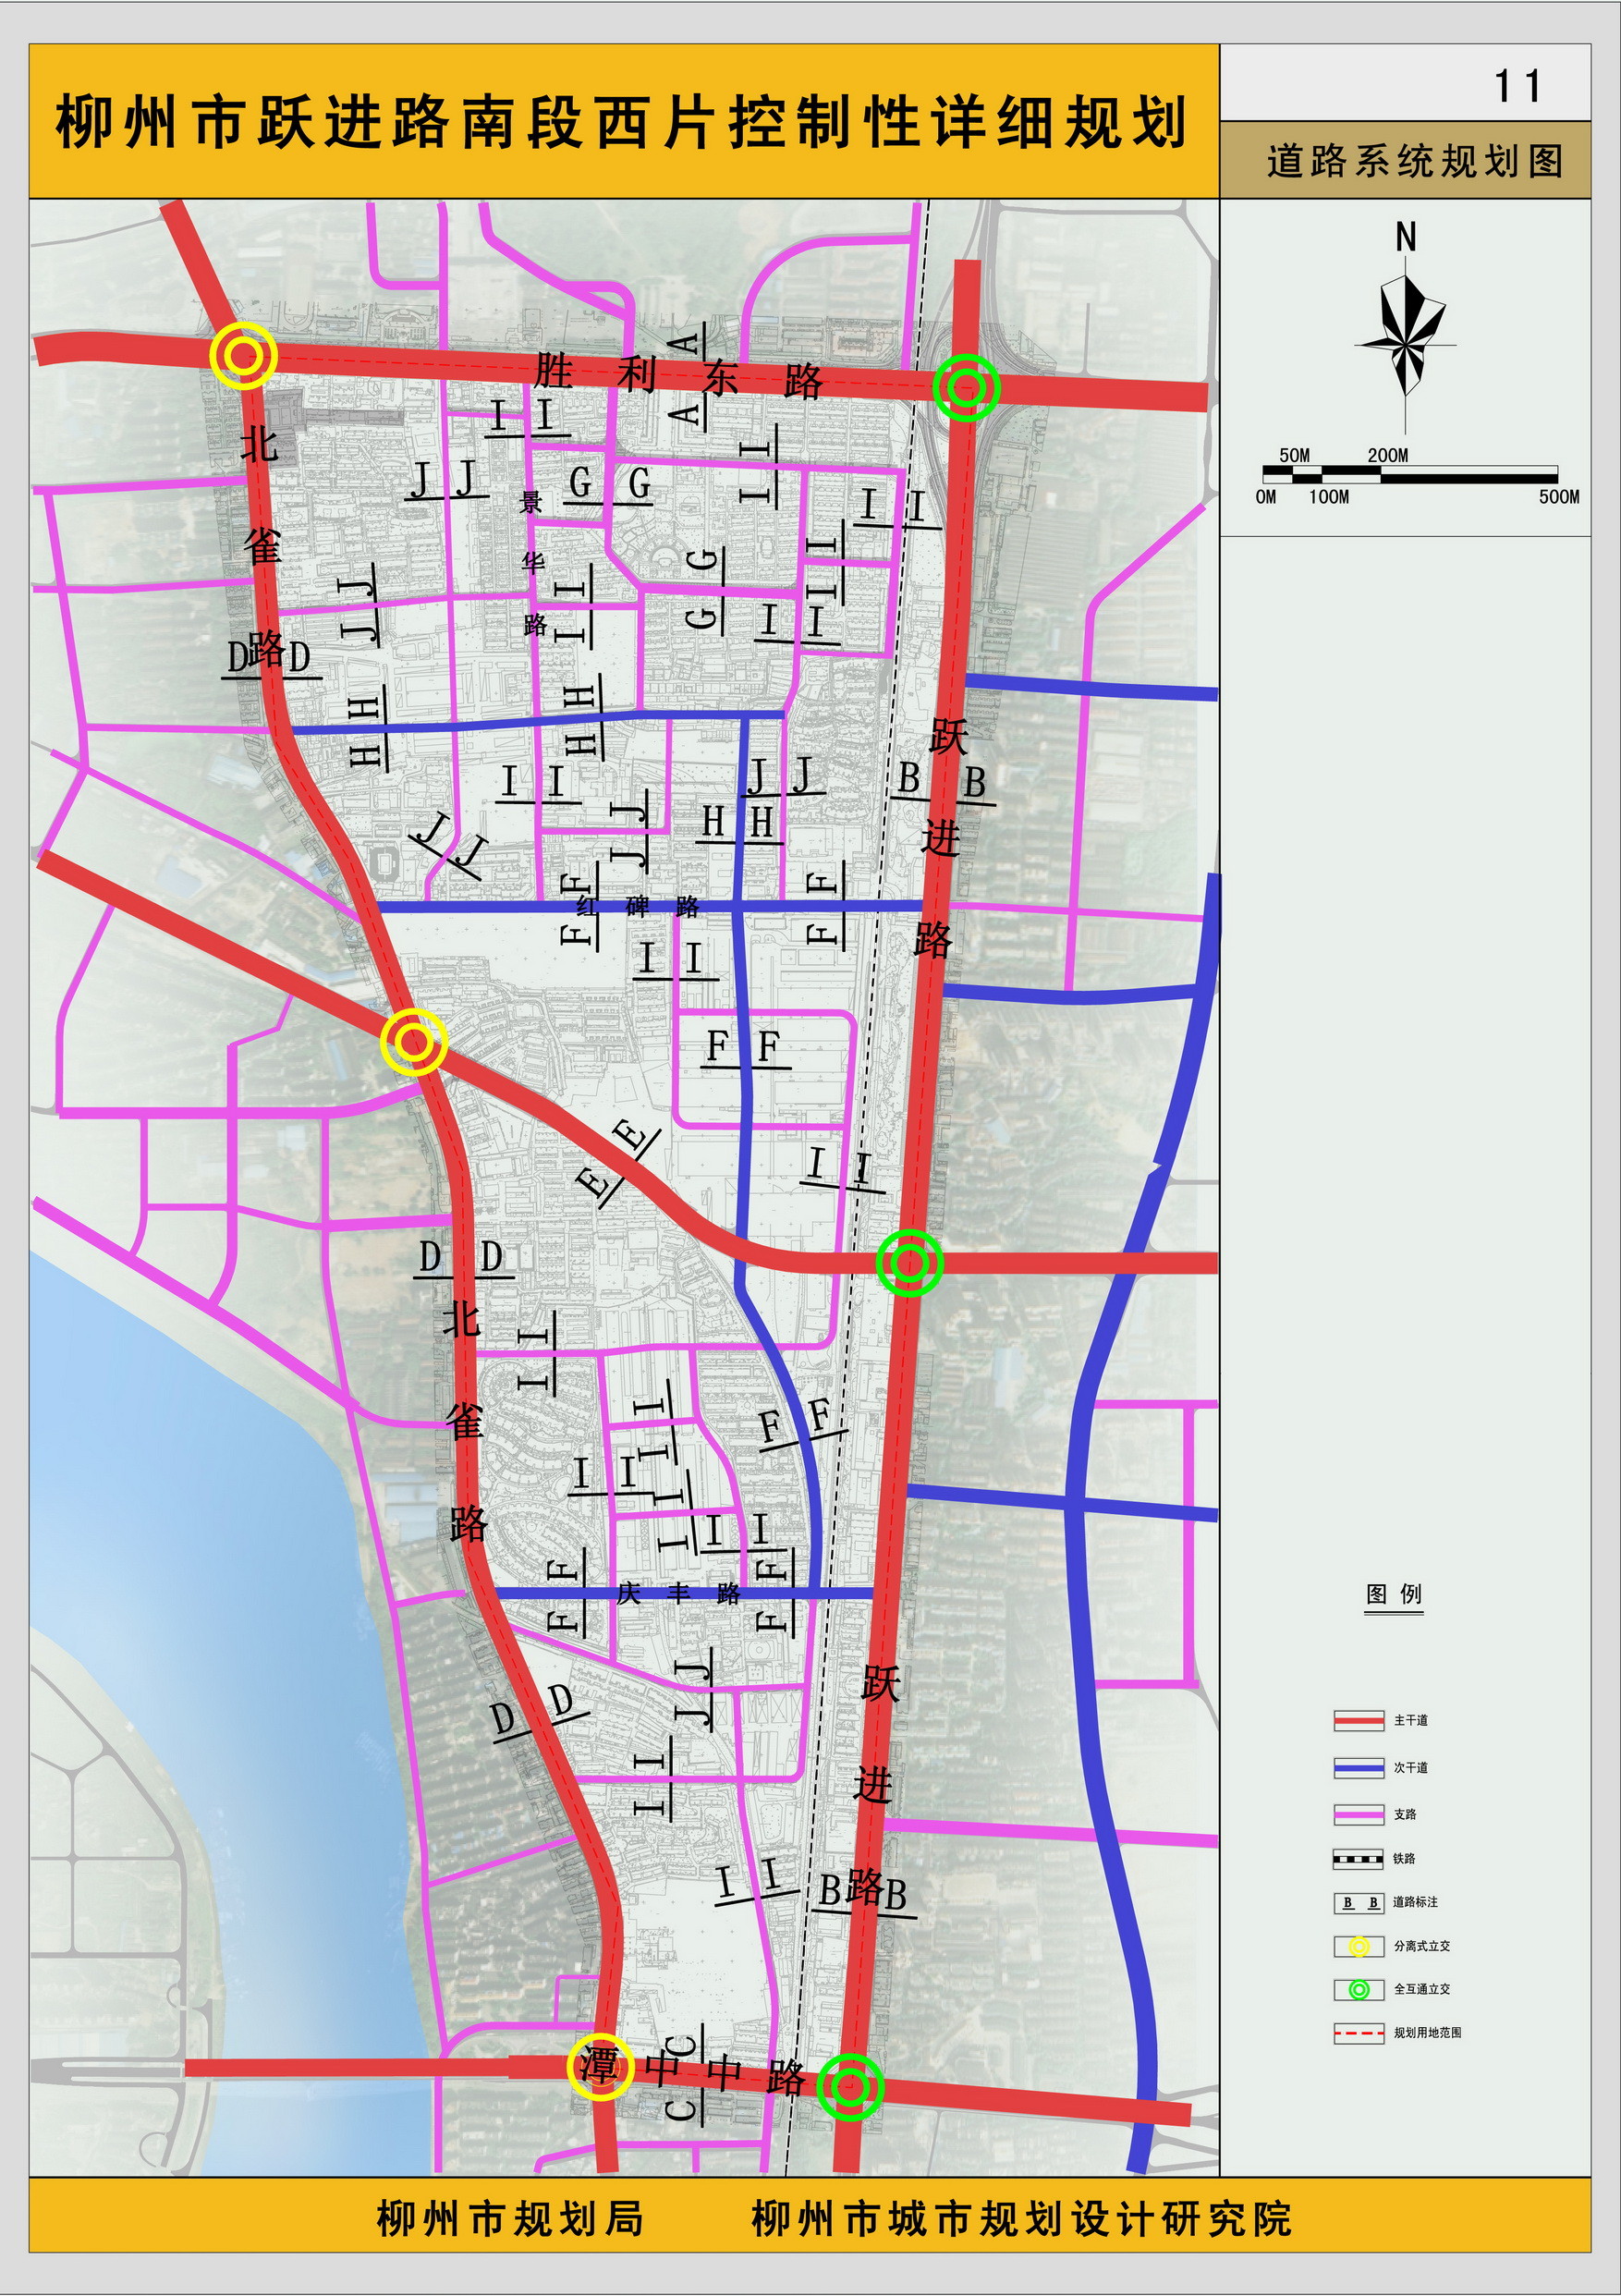 城市主干路,城市次干路,城市支路,小区级道路构成,大